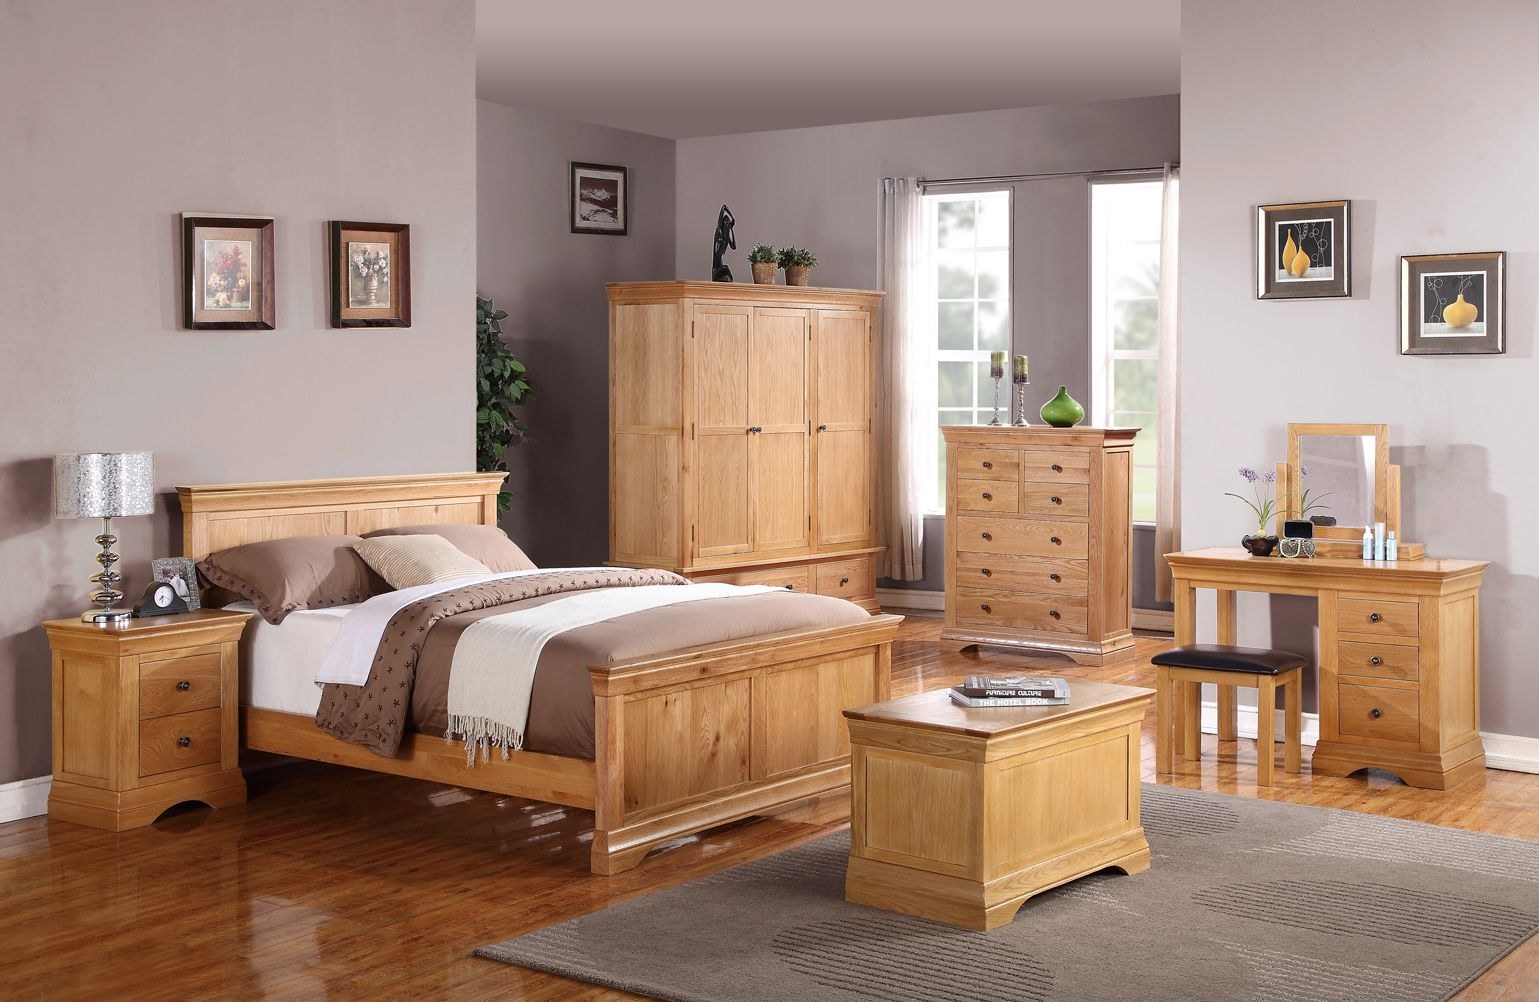 Спальня мебель дерево. Спальня Лотос Бобруйскмебель. Деревянная мебель в интерьере. Комната с деревянной мебелью. Спальня дуб.